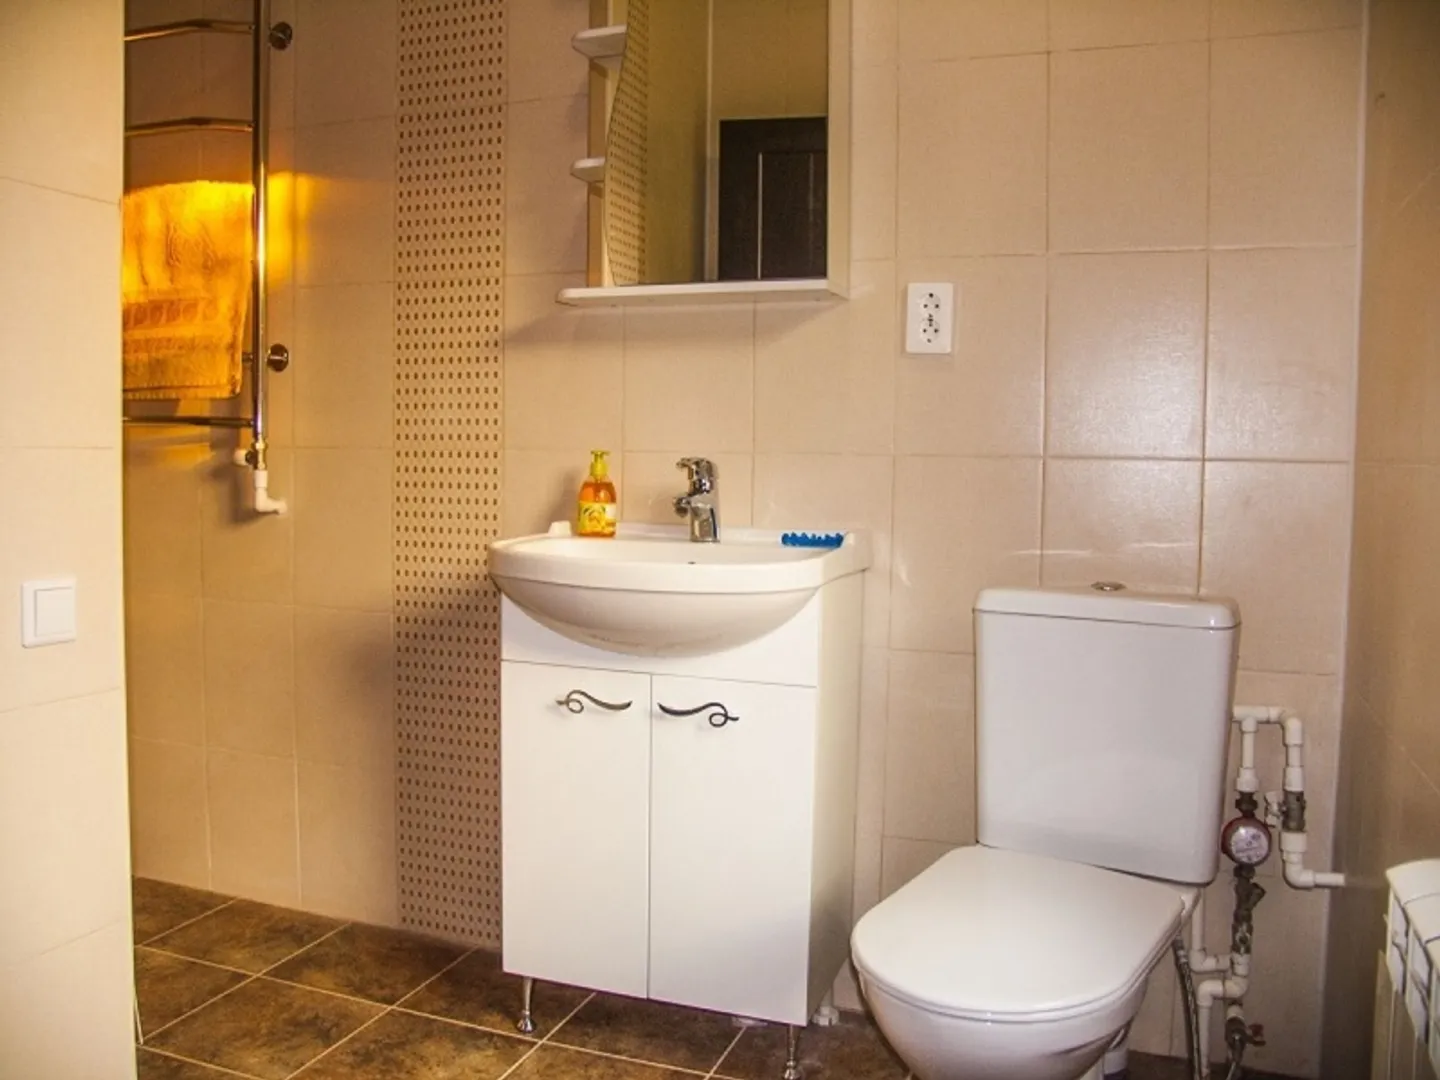 Санузел оборудован унитазом, раковиной, мебелью для ванной комнаты. В санузле установлен душ.